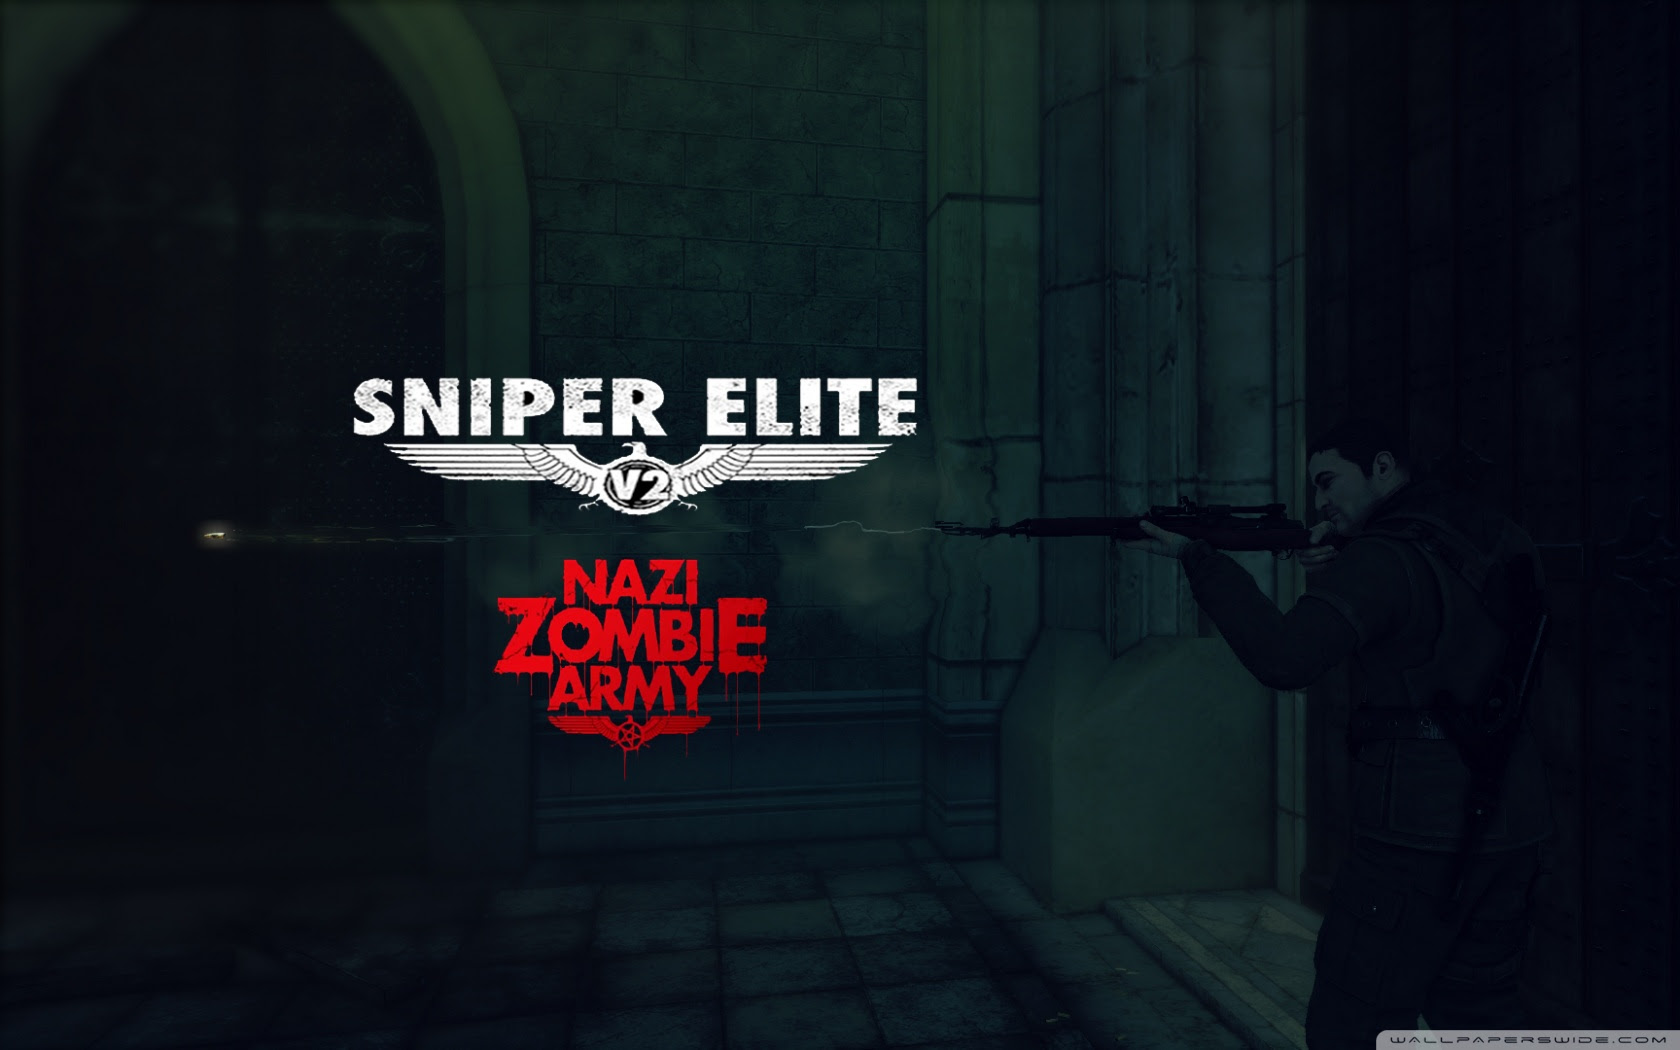 Sniper Elite V2 Nazi Zombie Army ❤ 4K HD Desktop Wallpaper for 4K